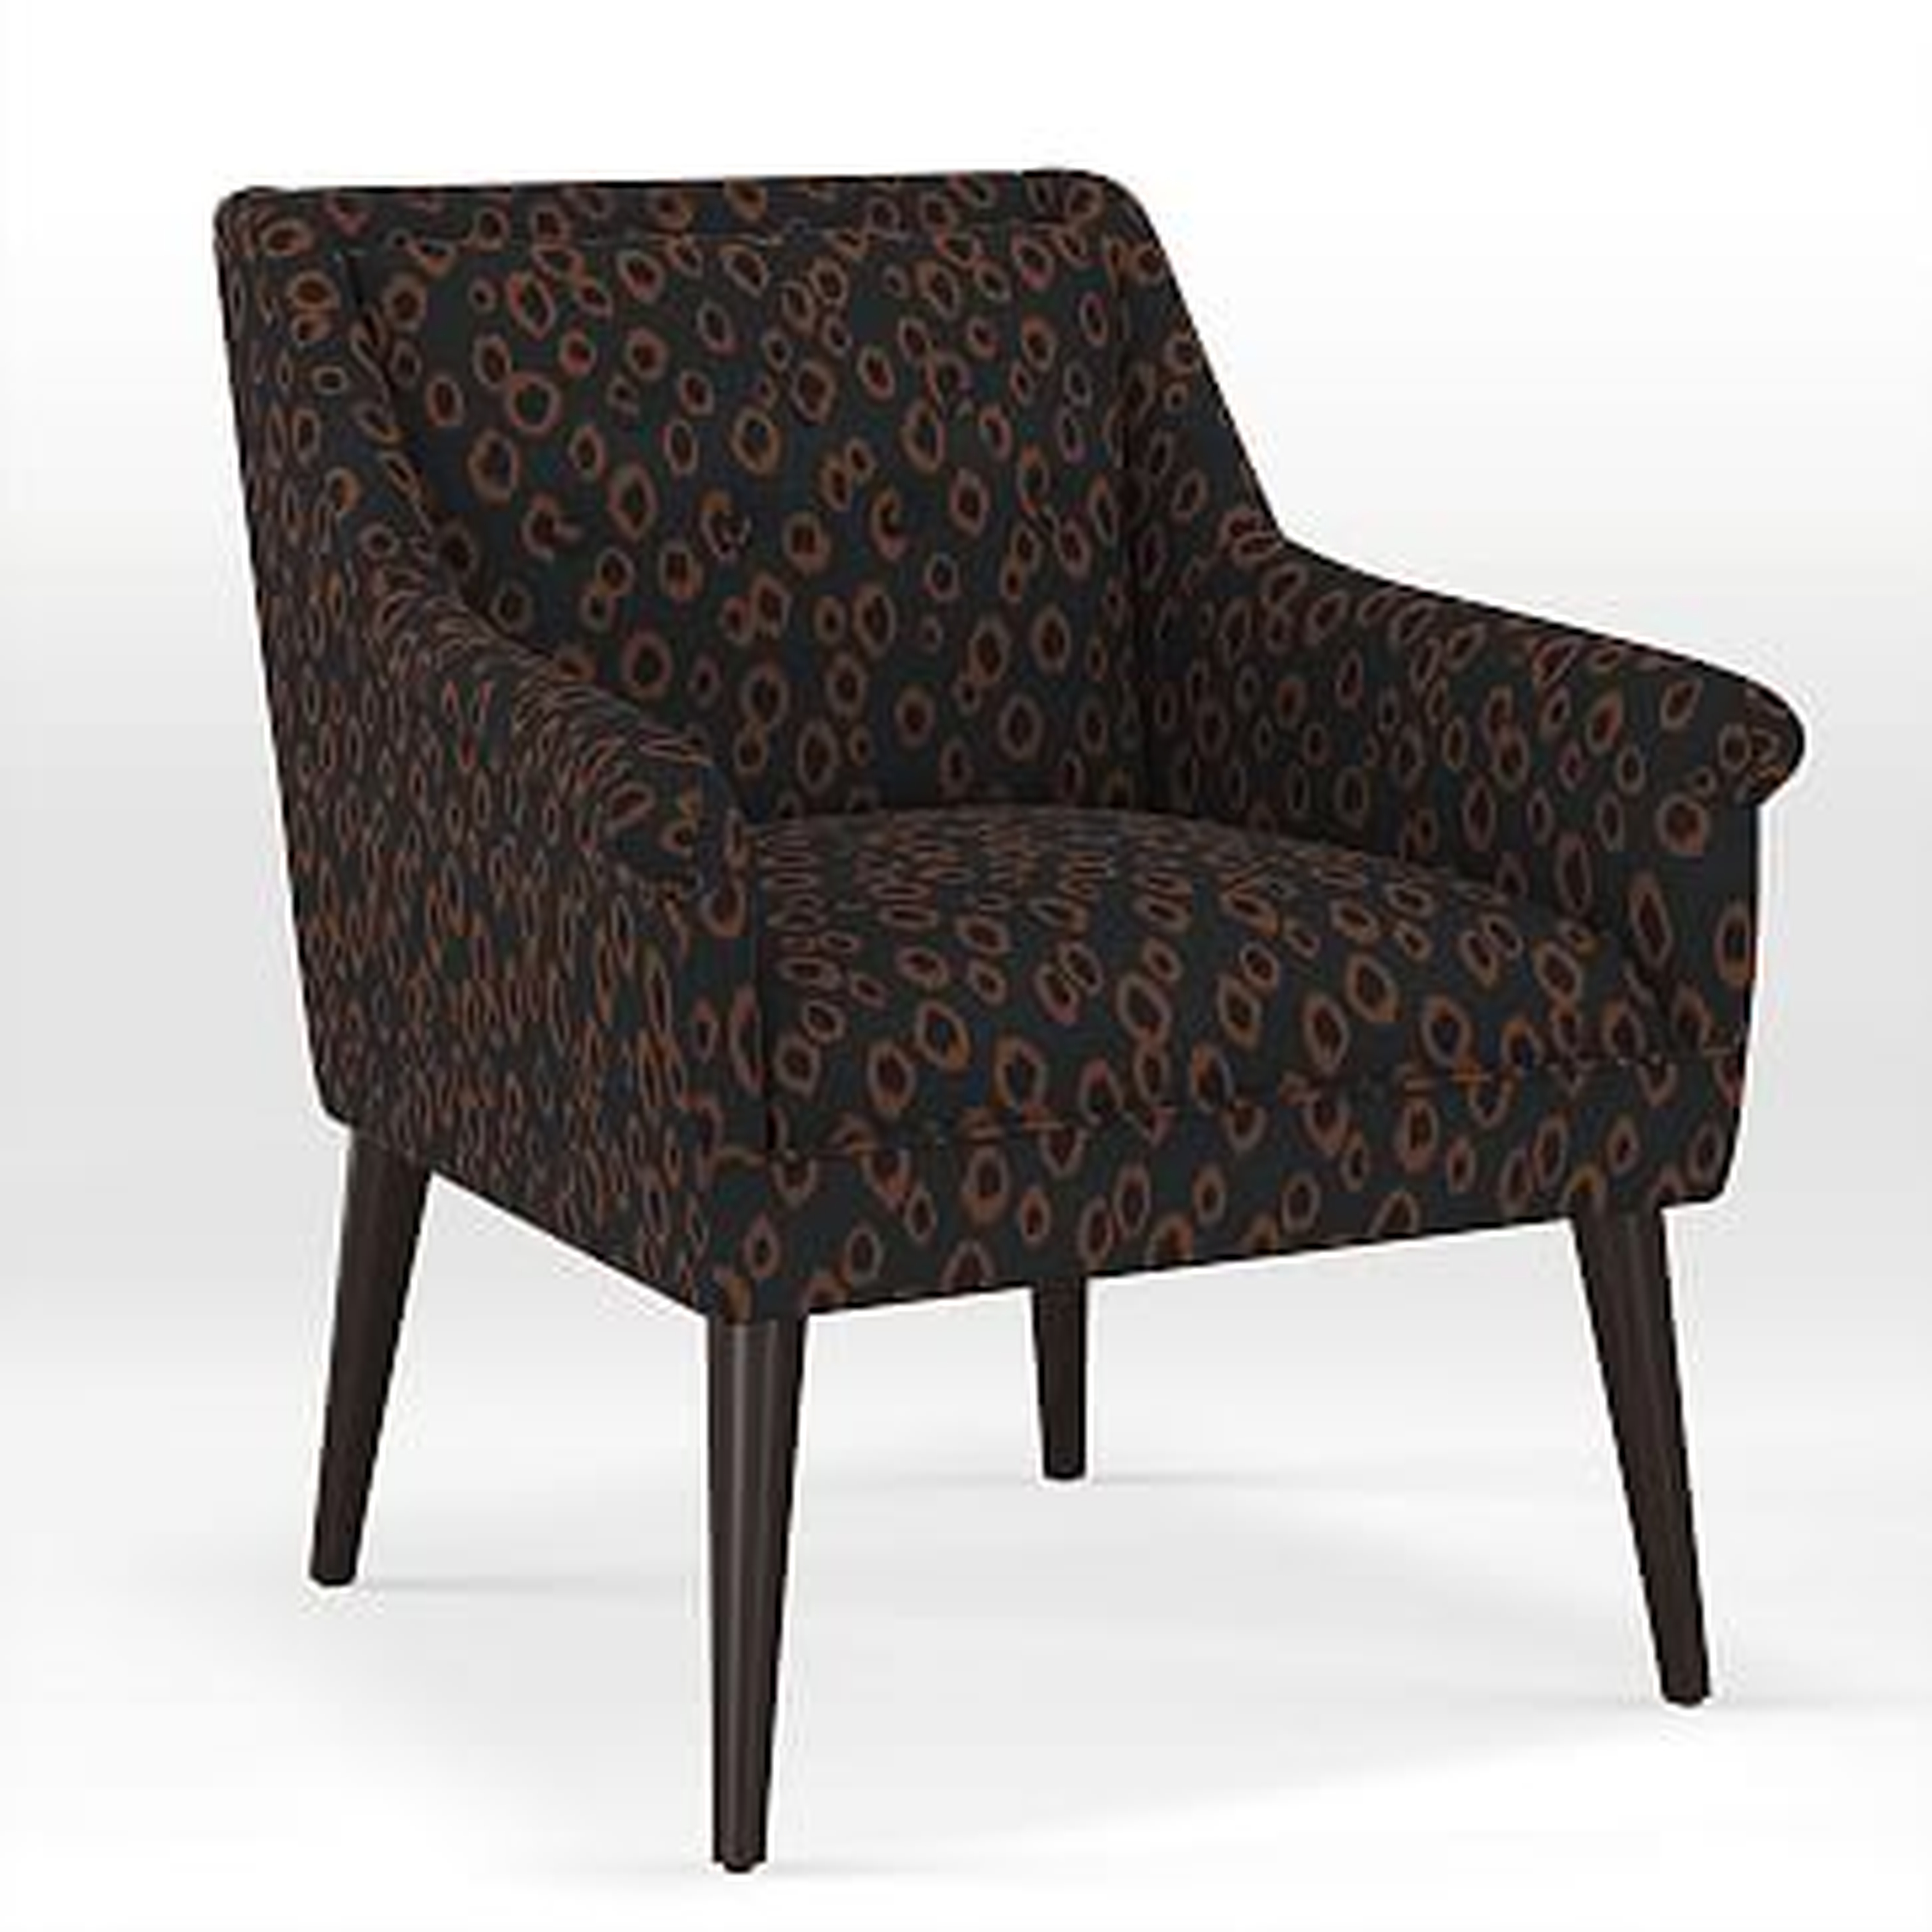 Button Tufted Chair, Print, Leopard Spots - West Elm